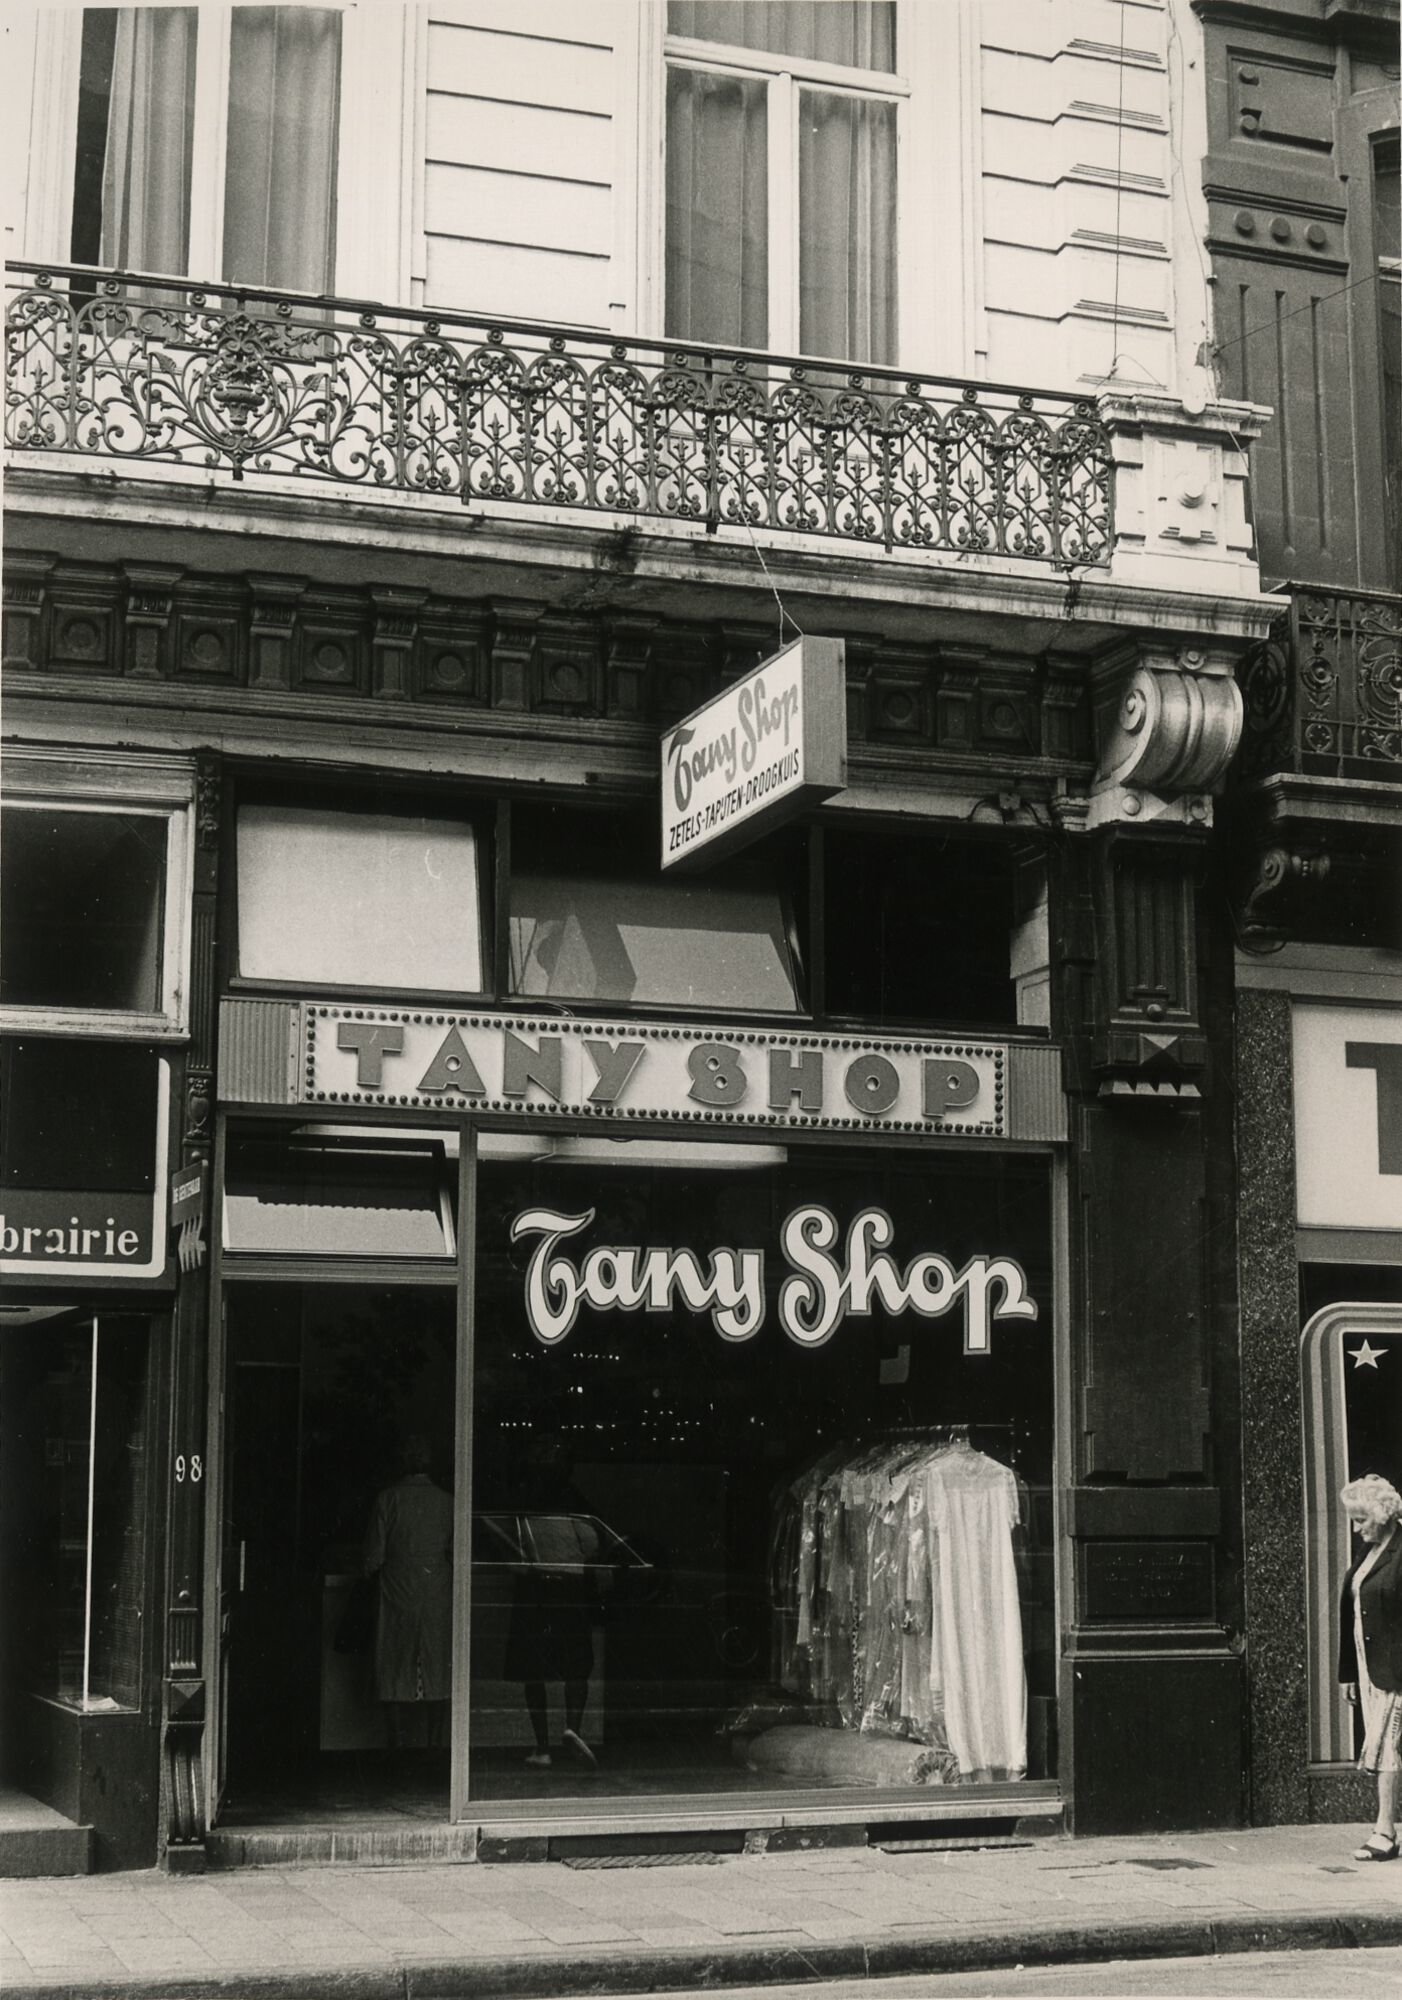 Etalage van nieuwkuis Tany Shop in Gent